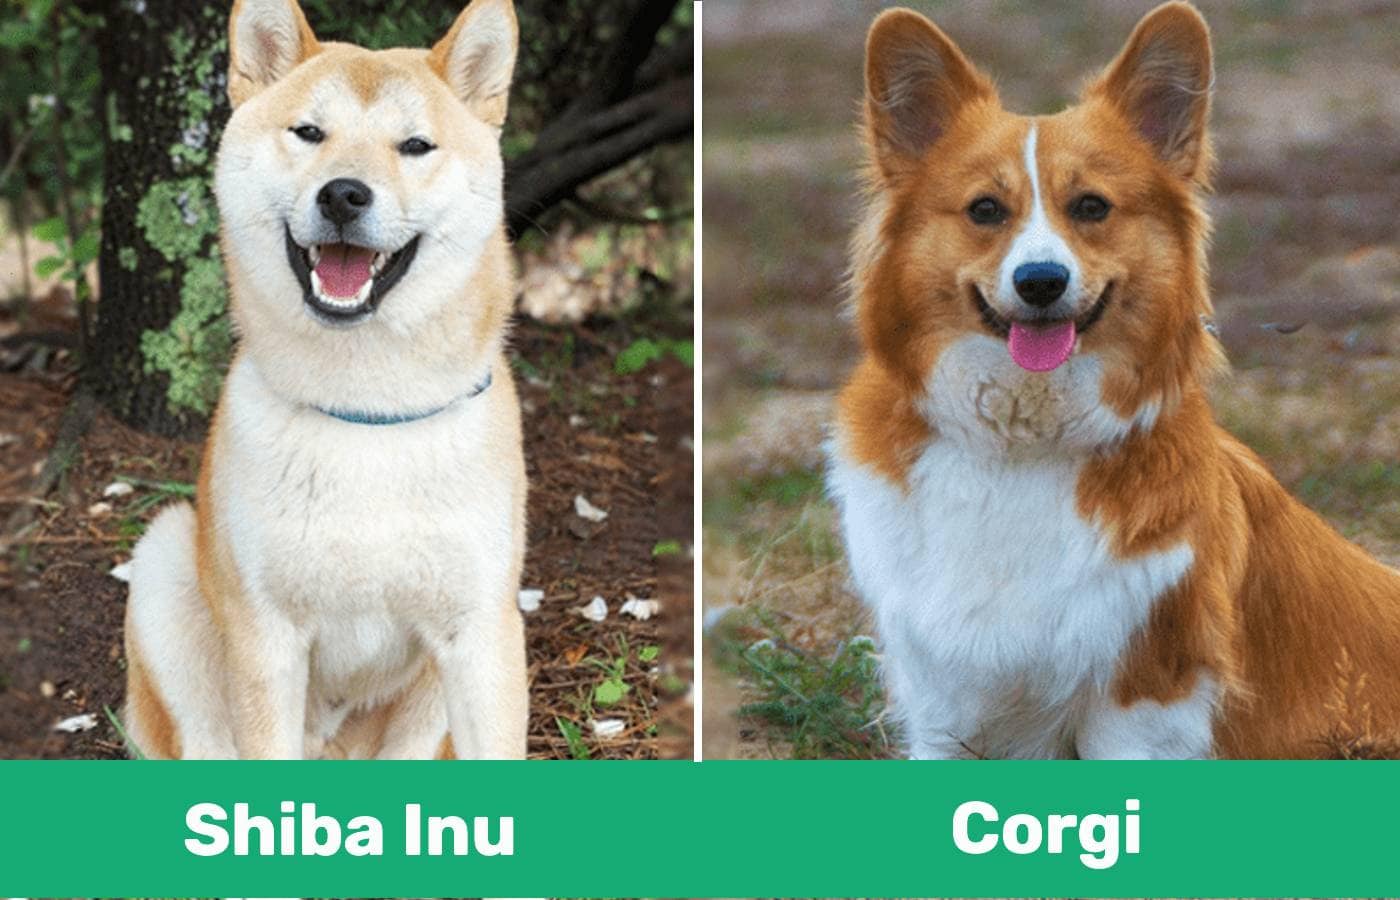 Shiba Inu & Corgi side by side